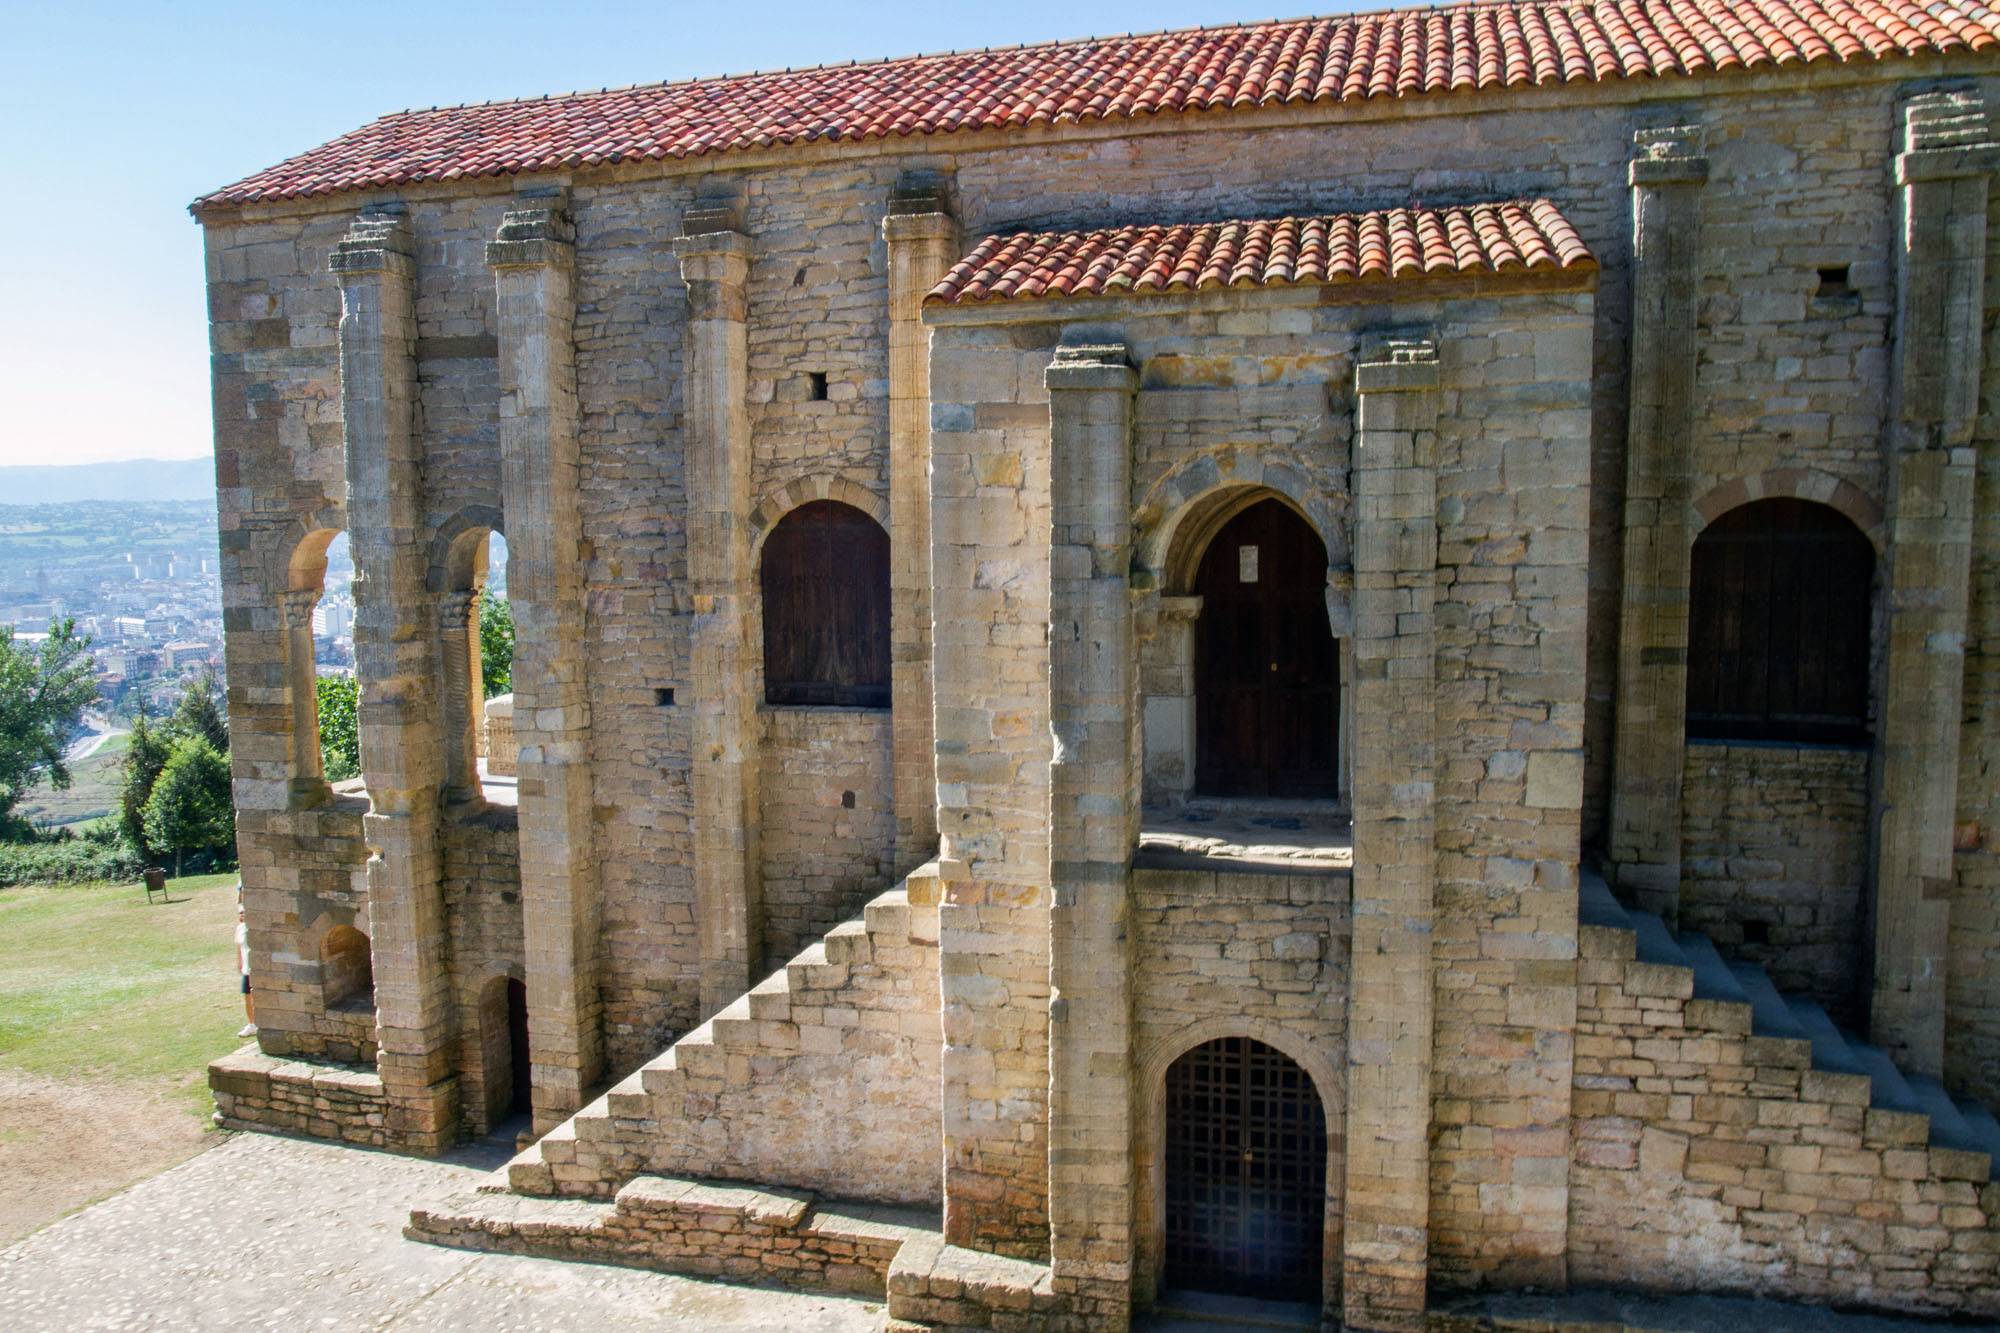 Santa María del Naranco
